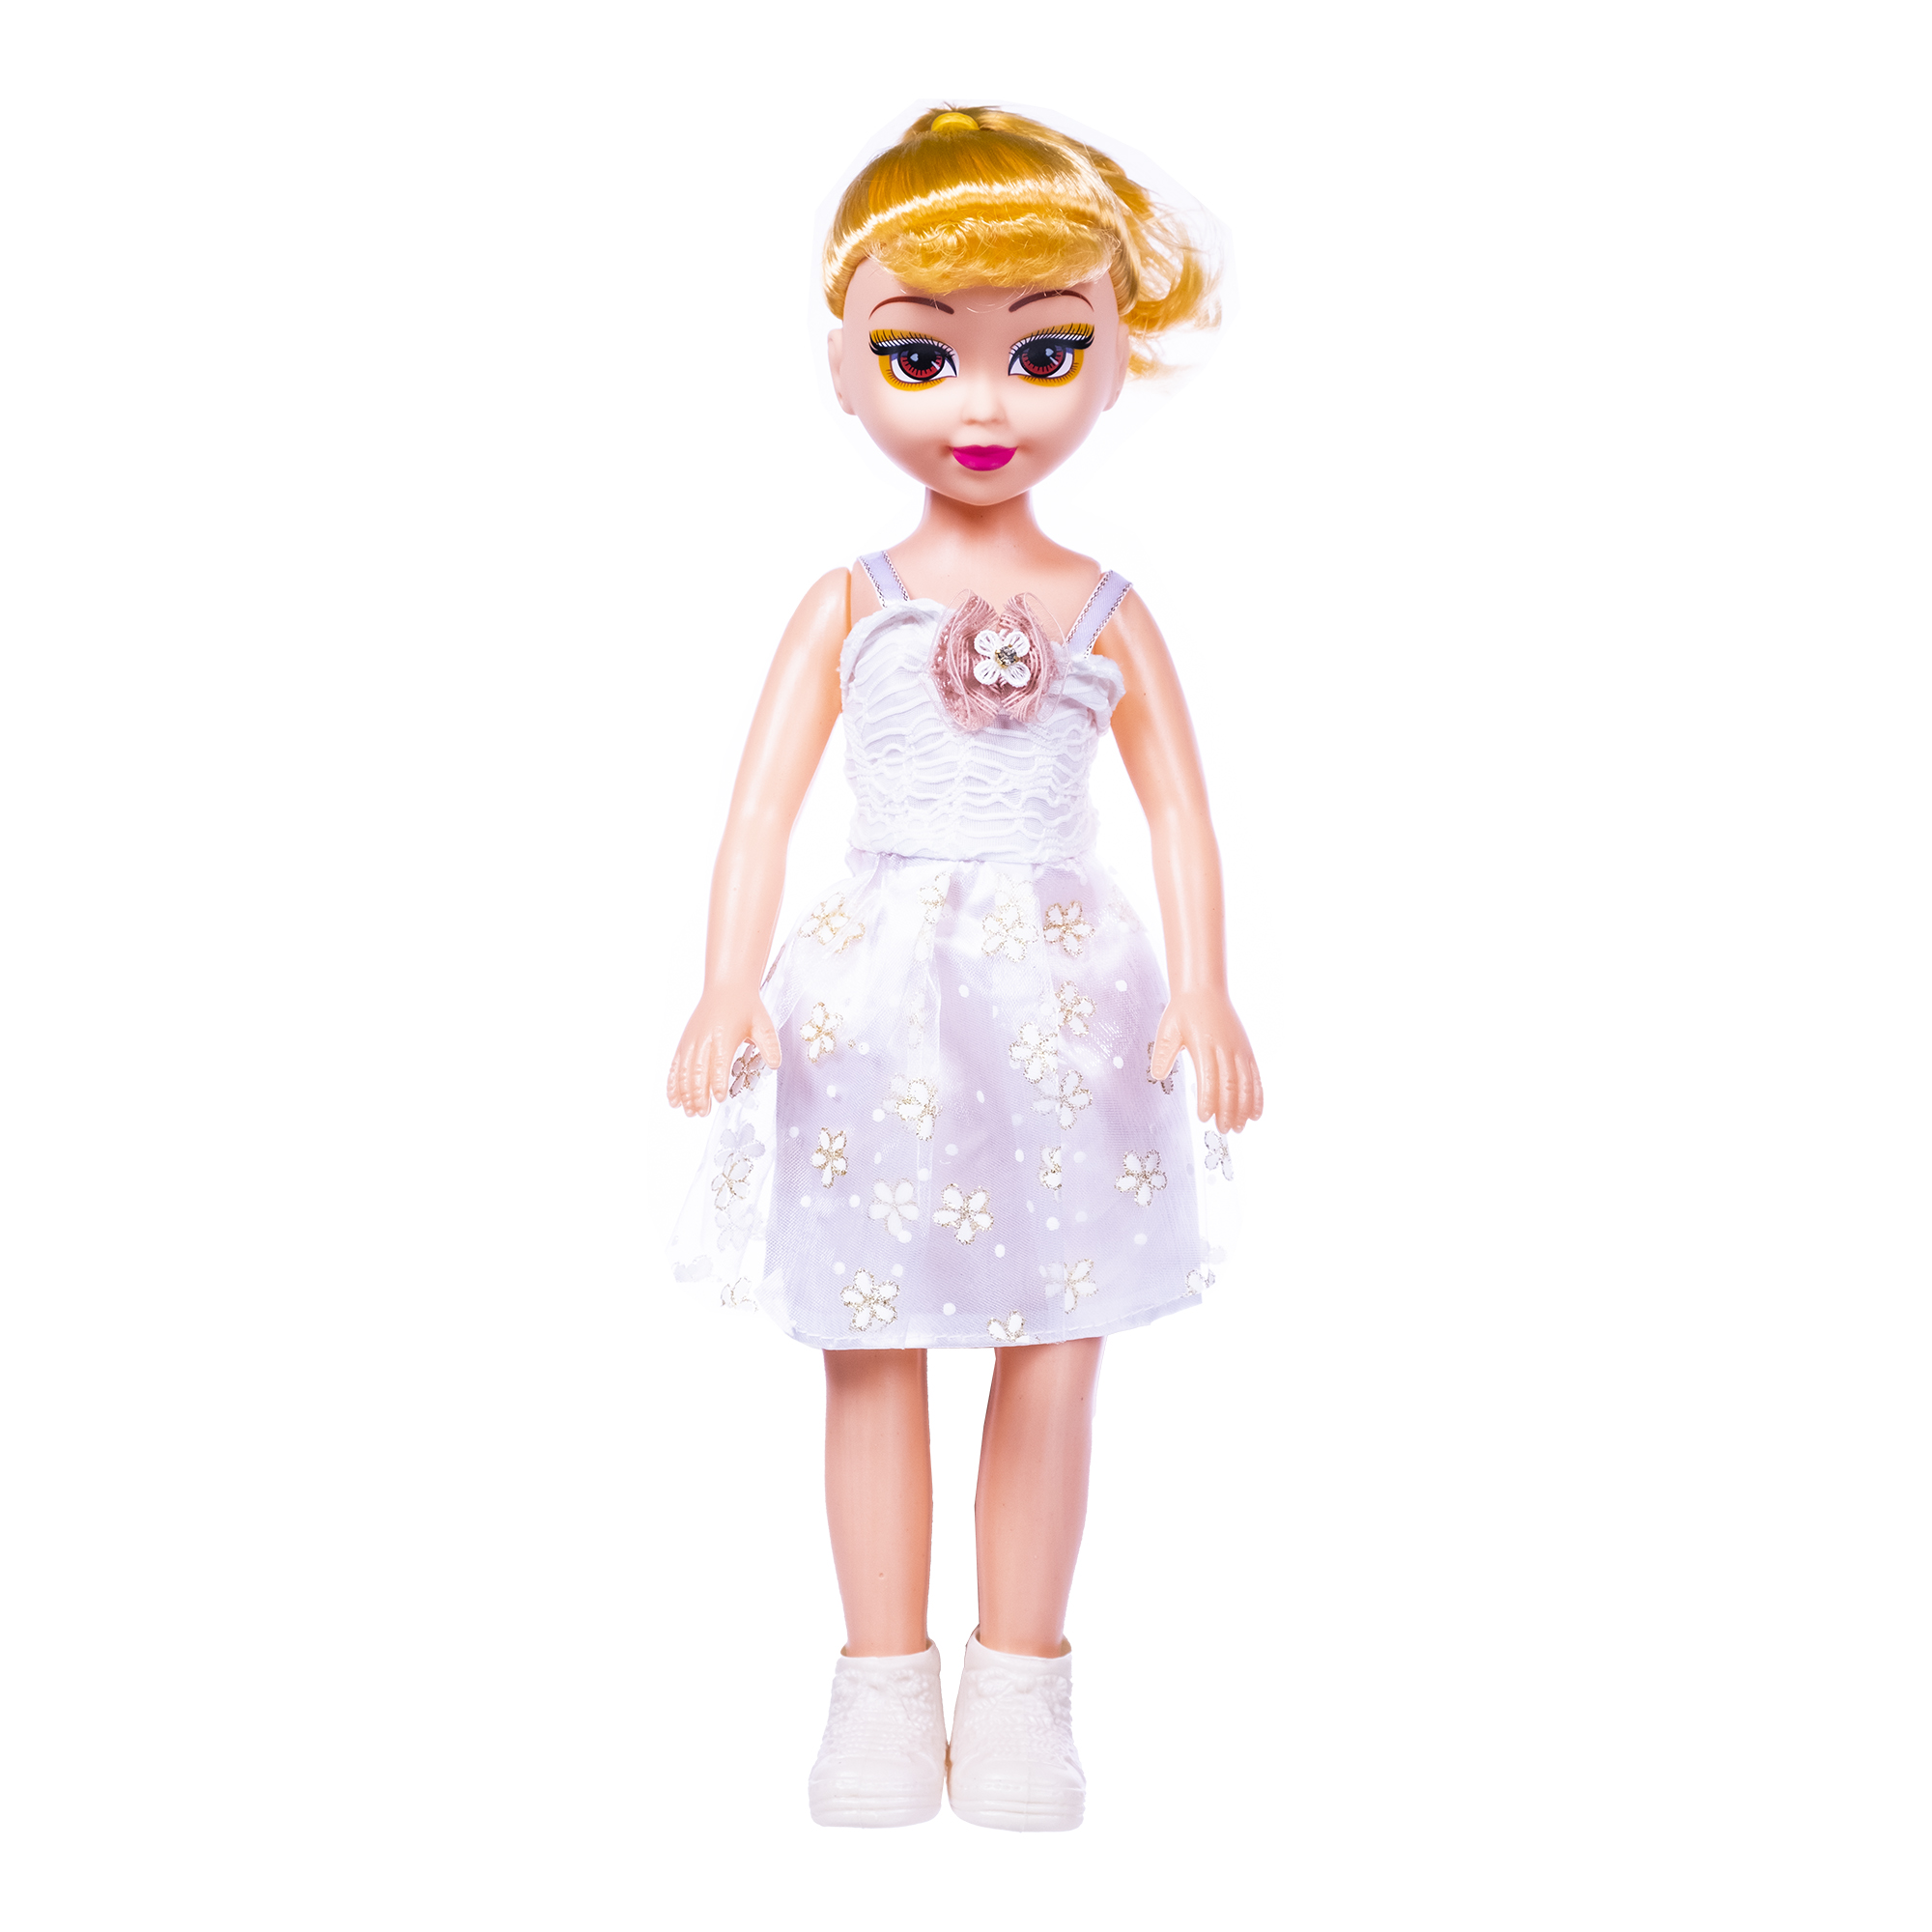 Кукла Феникс тойз со звуком, в комплекте с батарейками, 43 см, 1000063 кукла история игрушек джесси со звуком toy story 31 см